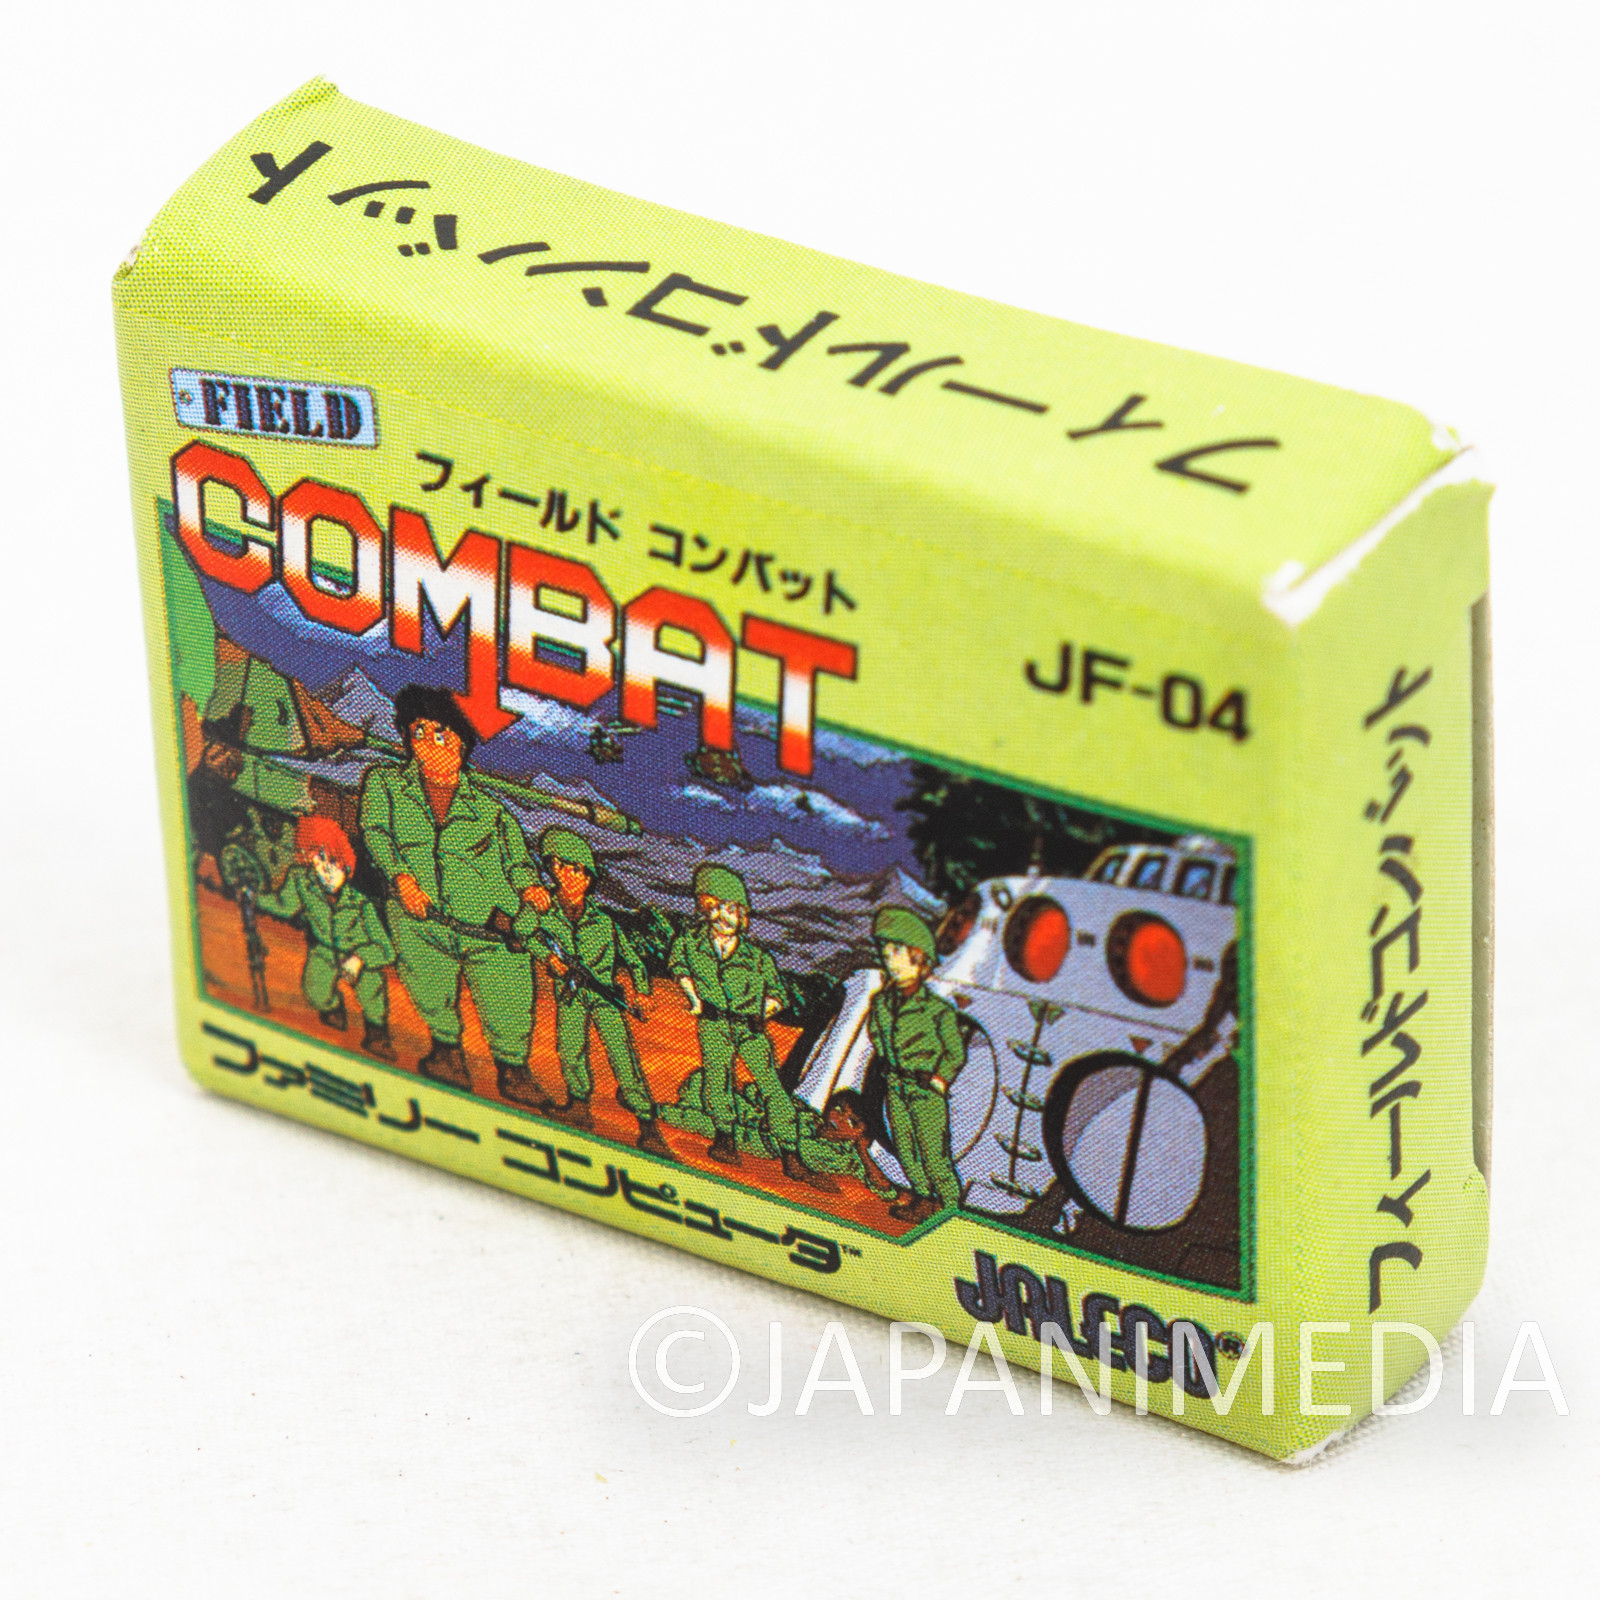 Field Combat Cassette Mini Eraser AMADA JALECO FAMICOM NES Nintendo